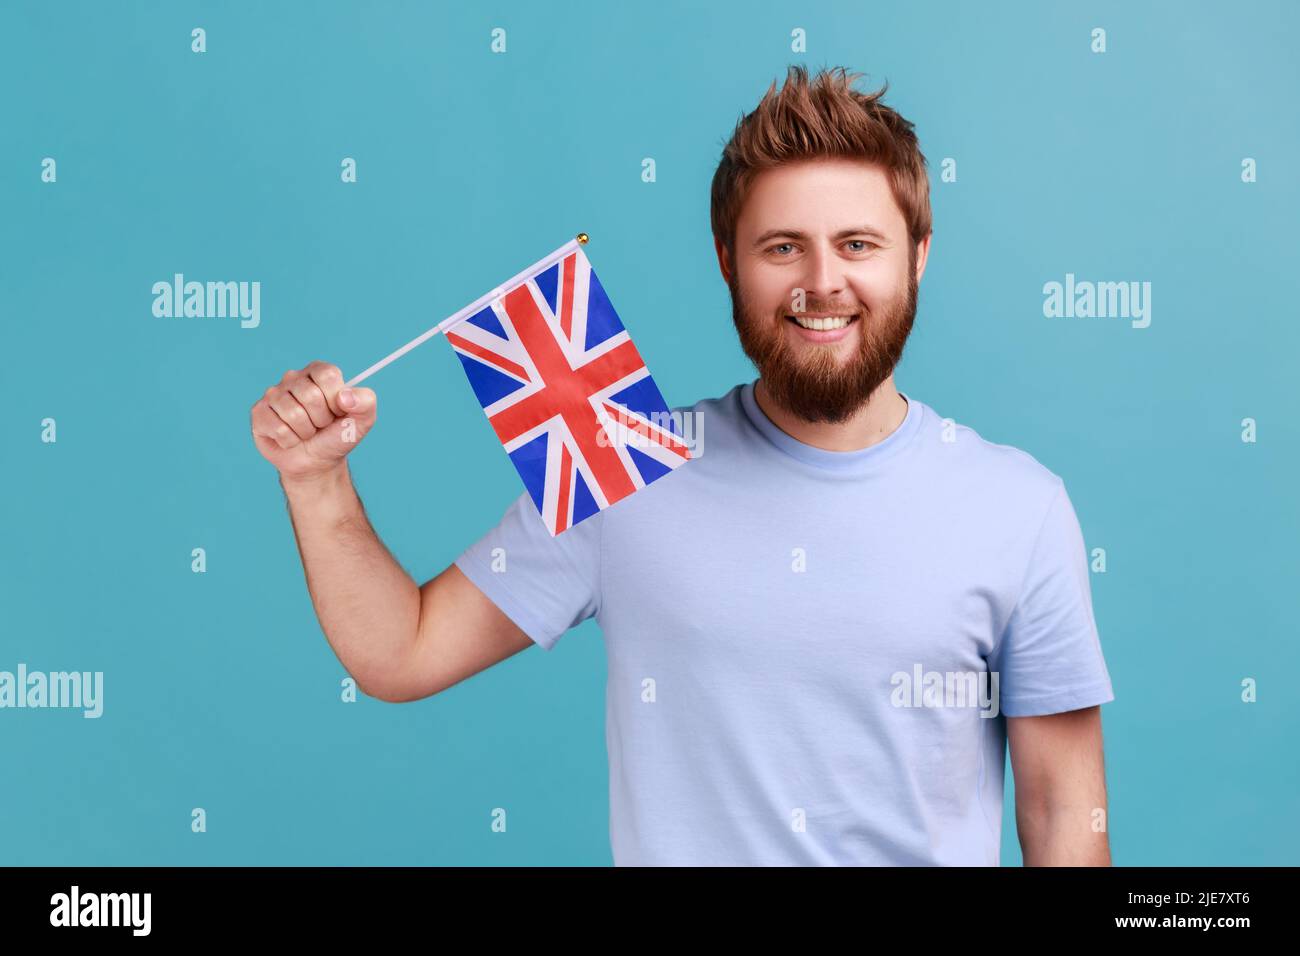 Ritratto di bello soddisfatto barbuto uomo che detiene la bandiera di un'unità costituente del Regno Unito, celebrando il giorno britannico dell'Indipendenza. Studio interno girato isolato su sfondo blu. Foto Stock